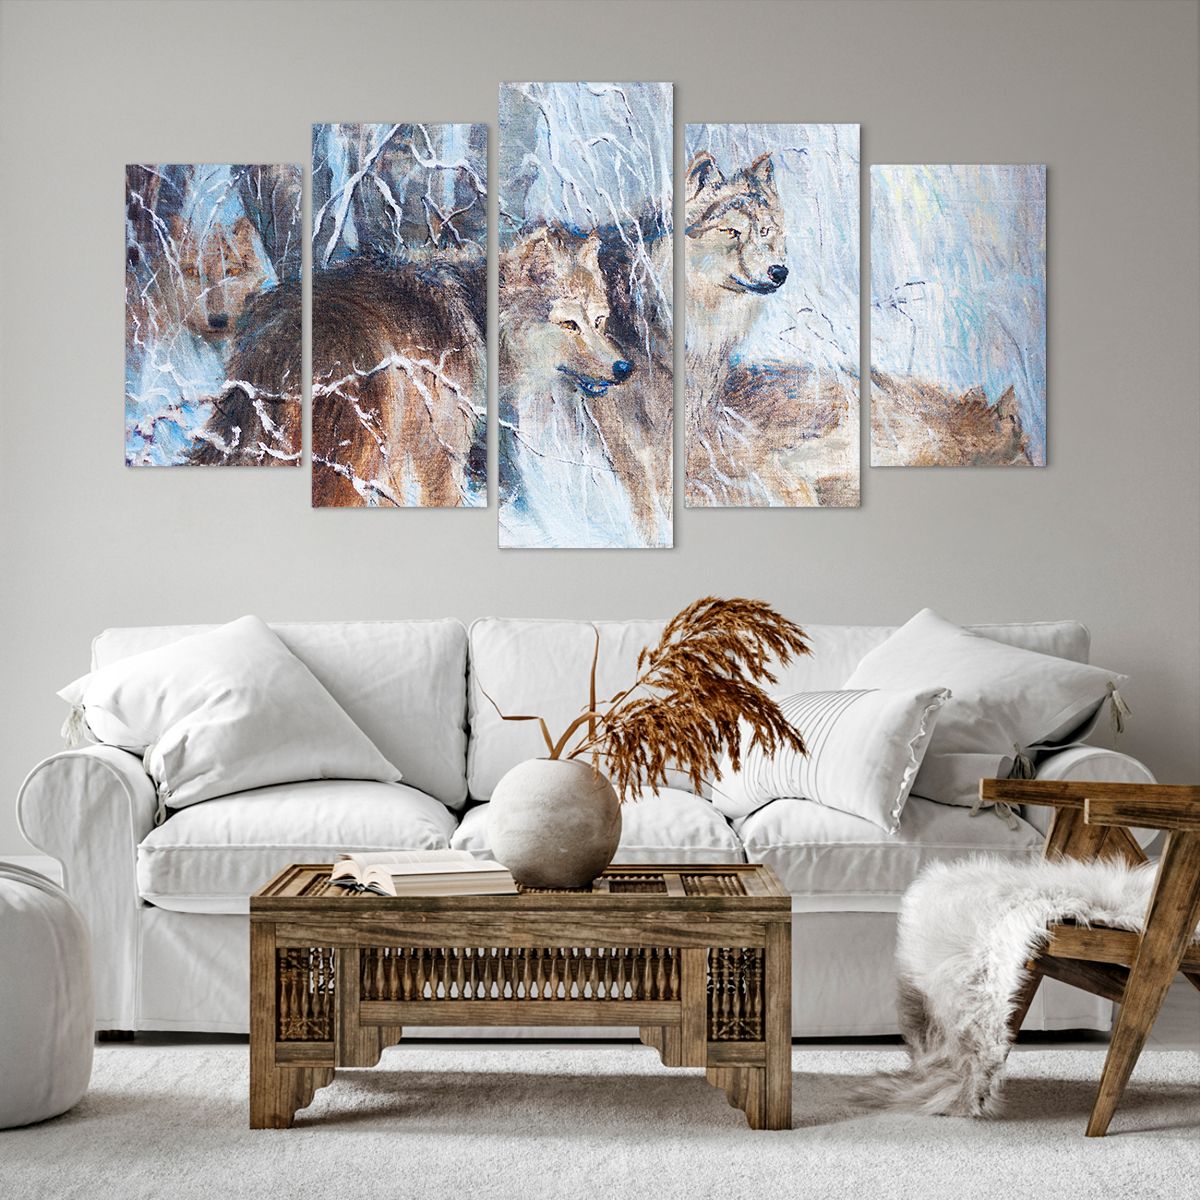 Bild auf Leinwand Tiere, Bild auf Leinwand Wölfe, Bild auf Leinwand Wald, Bild auf Leinwand Natur, Bild auf Leinwand Kunst